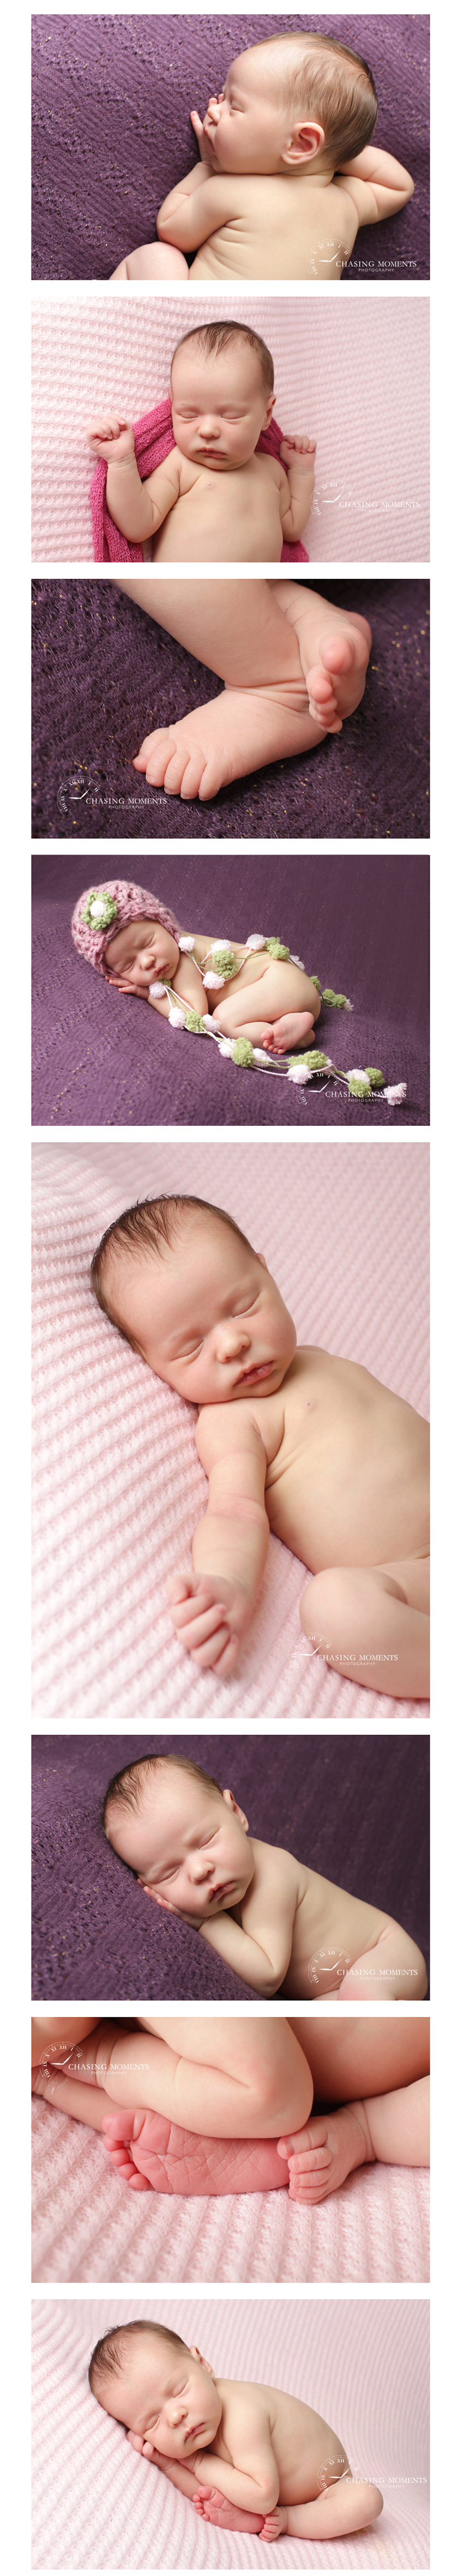 fairfax newborn photography